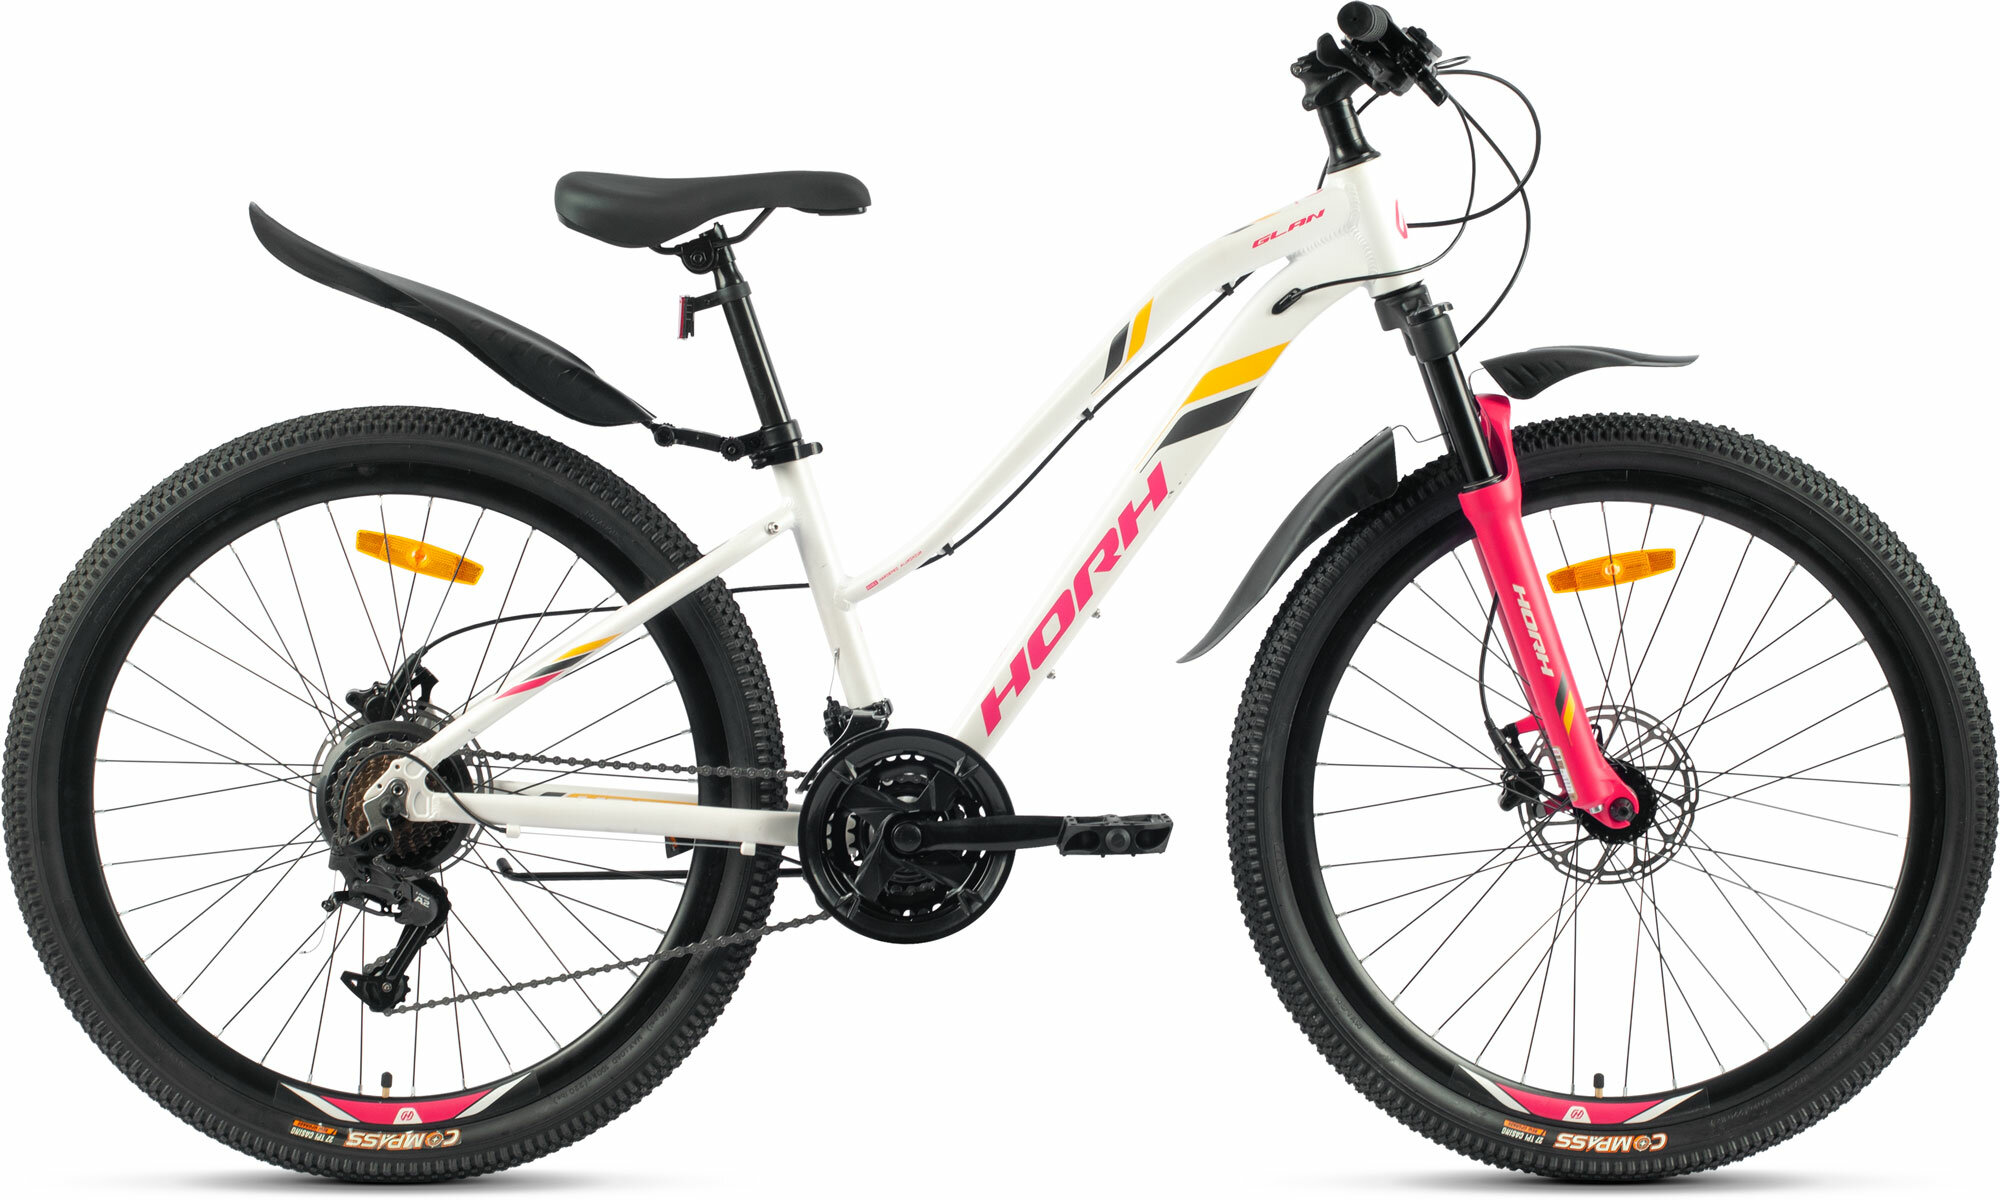 Велосипед горный HORH GLAN 26" (2023), хардтейл, взрослый, женский, для девочек, алюминиевая рама, 21 скорость, дисковые гидравлические тормоза, цвет White-Red-Black, белый/красный/черный цвет, размер рамы 13,5", для роста 150-160 см